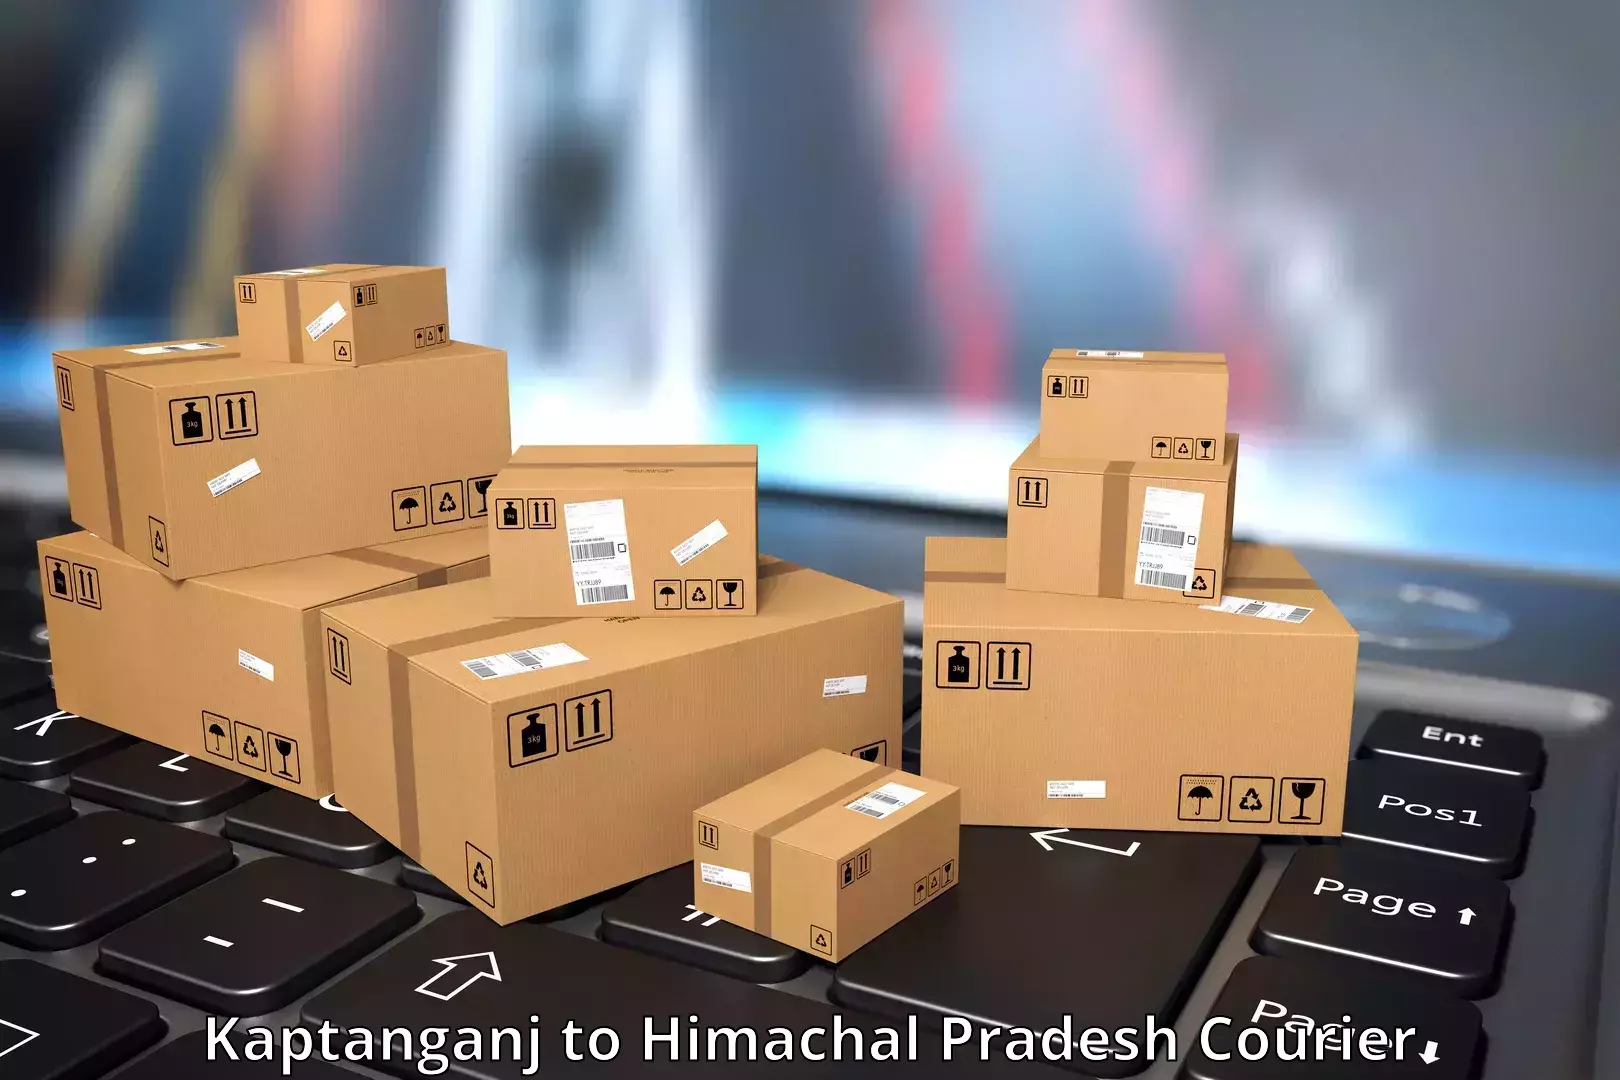 Modern courier technology Kaptanganj to Himachal Pradesh